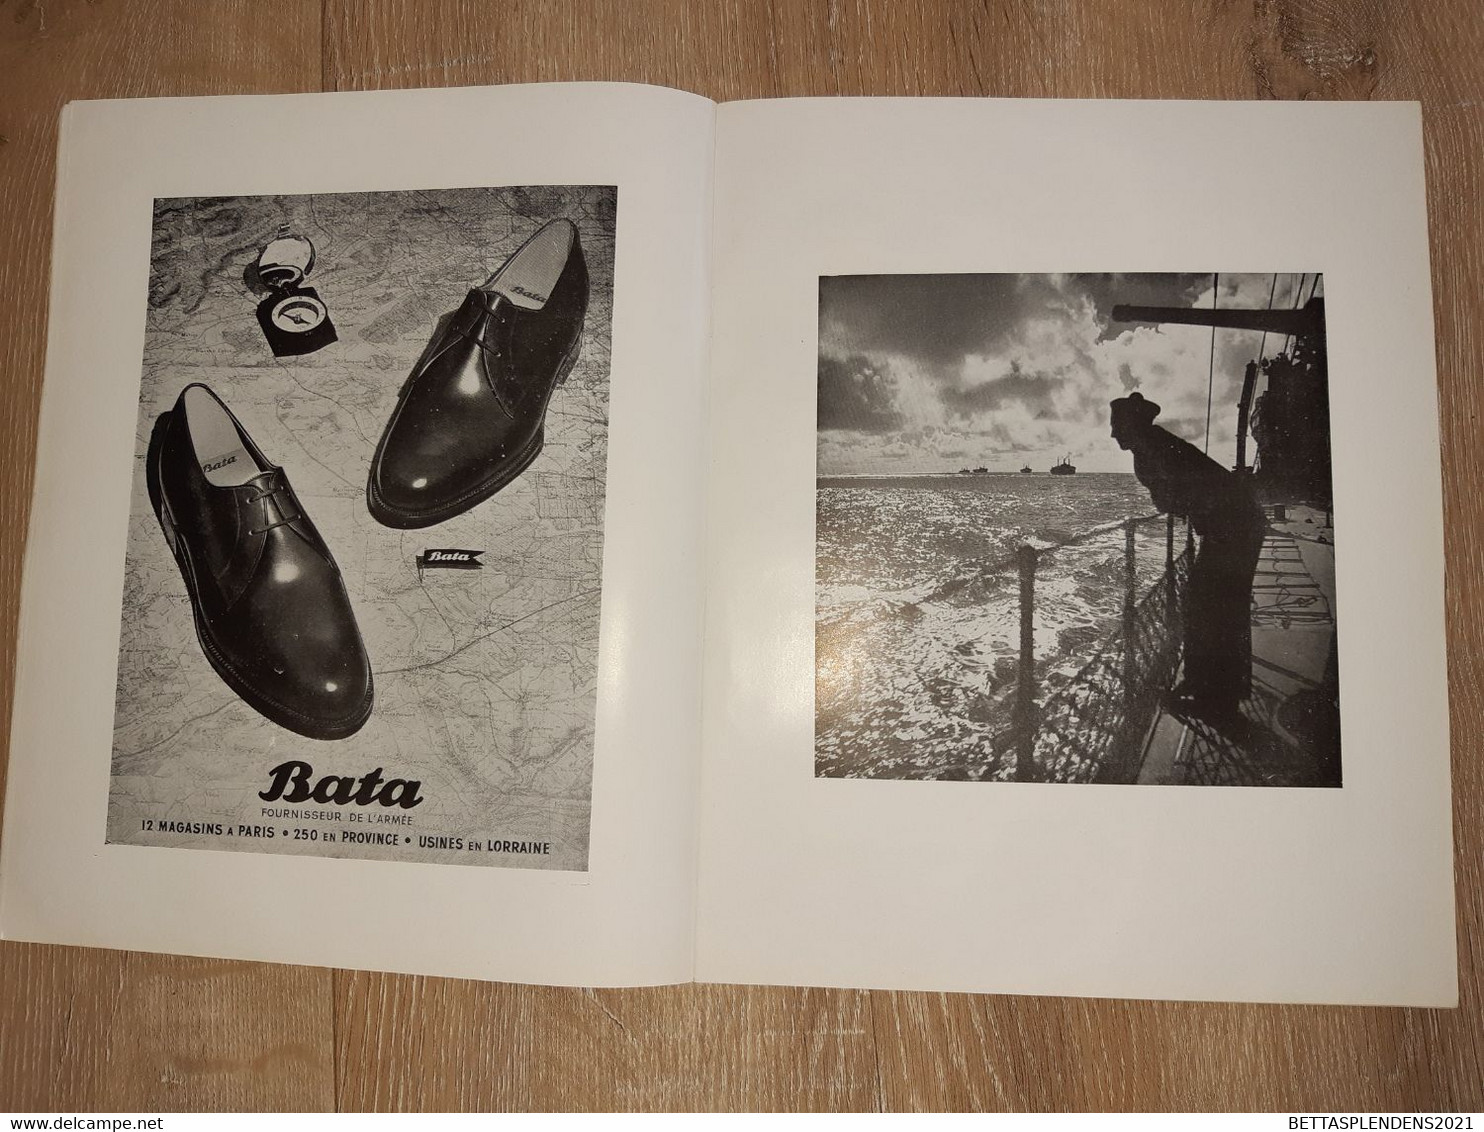 SEMAINE DE L'ARMEE 7-14 Juillet 1951 - Revue avec photos différents Corps d'Armées & Belles publicités